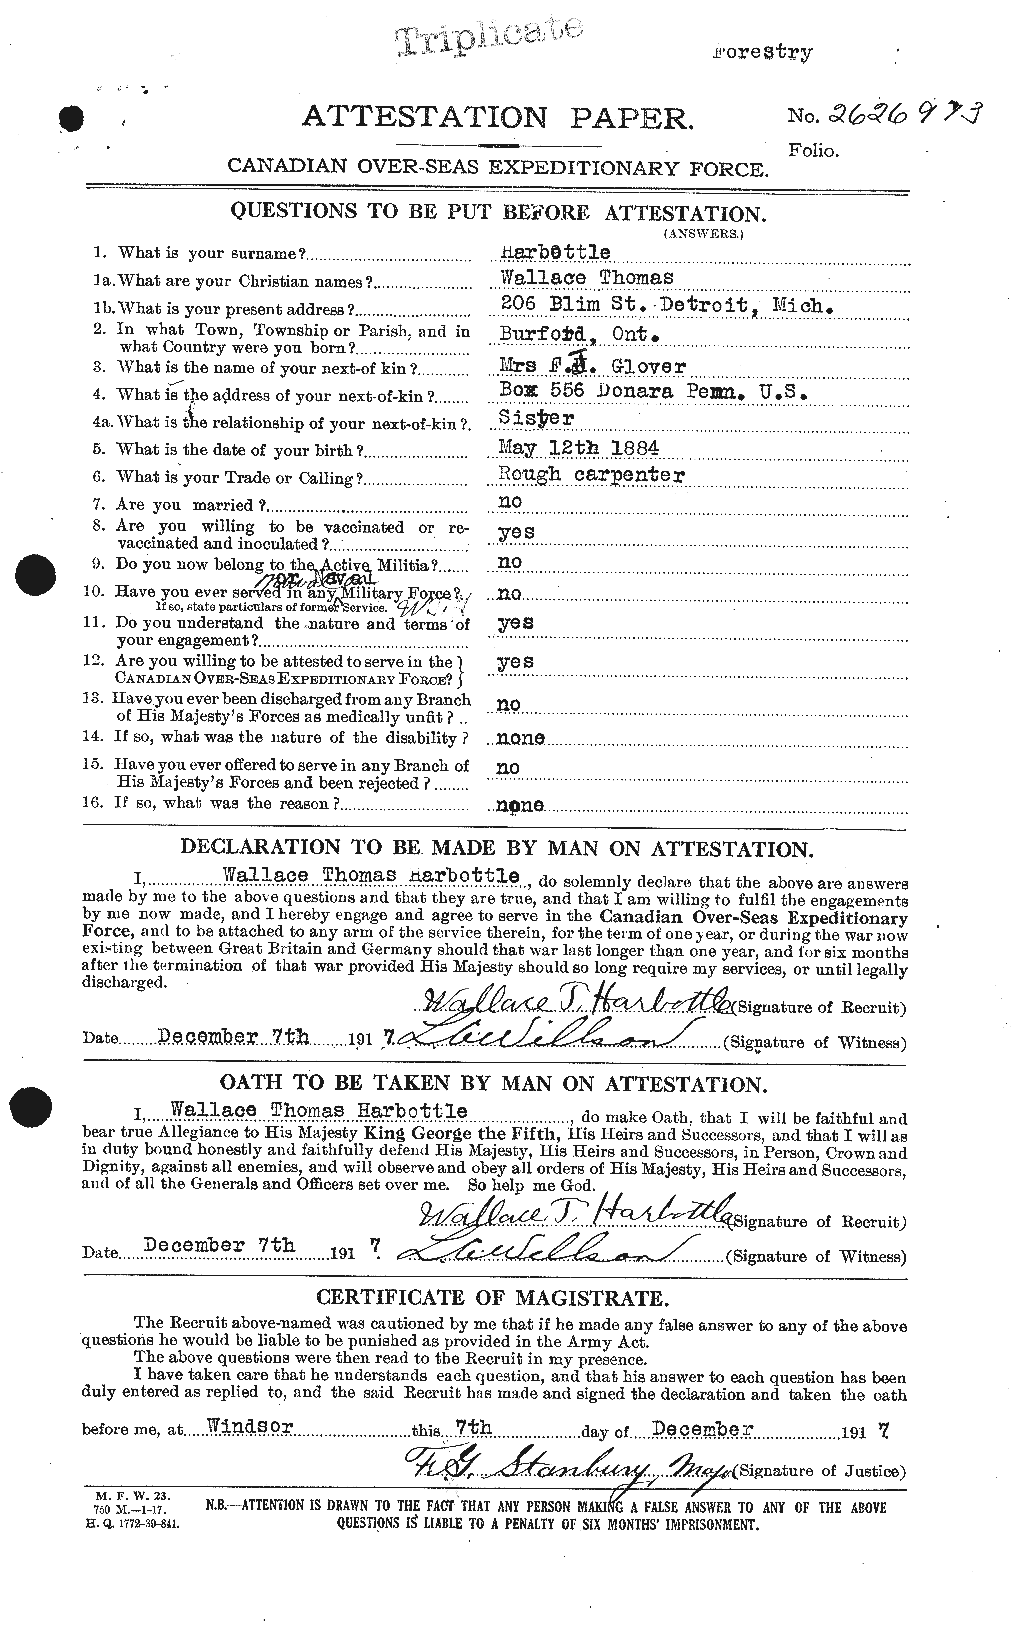 Dossiers du Personnel de la Première Guerre mondiale - CEC 376175a